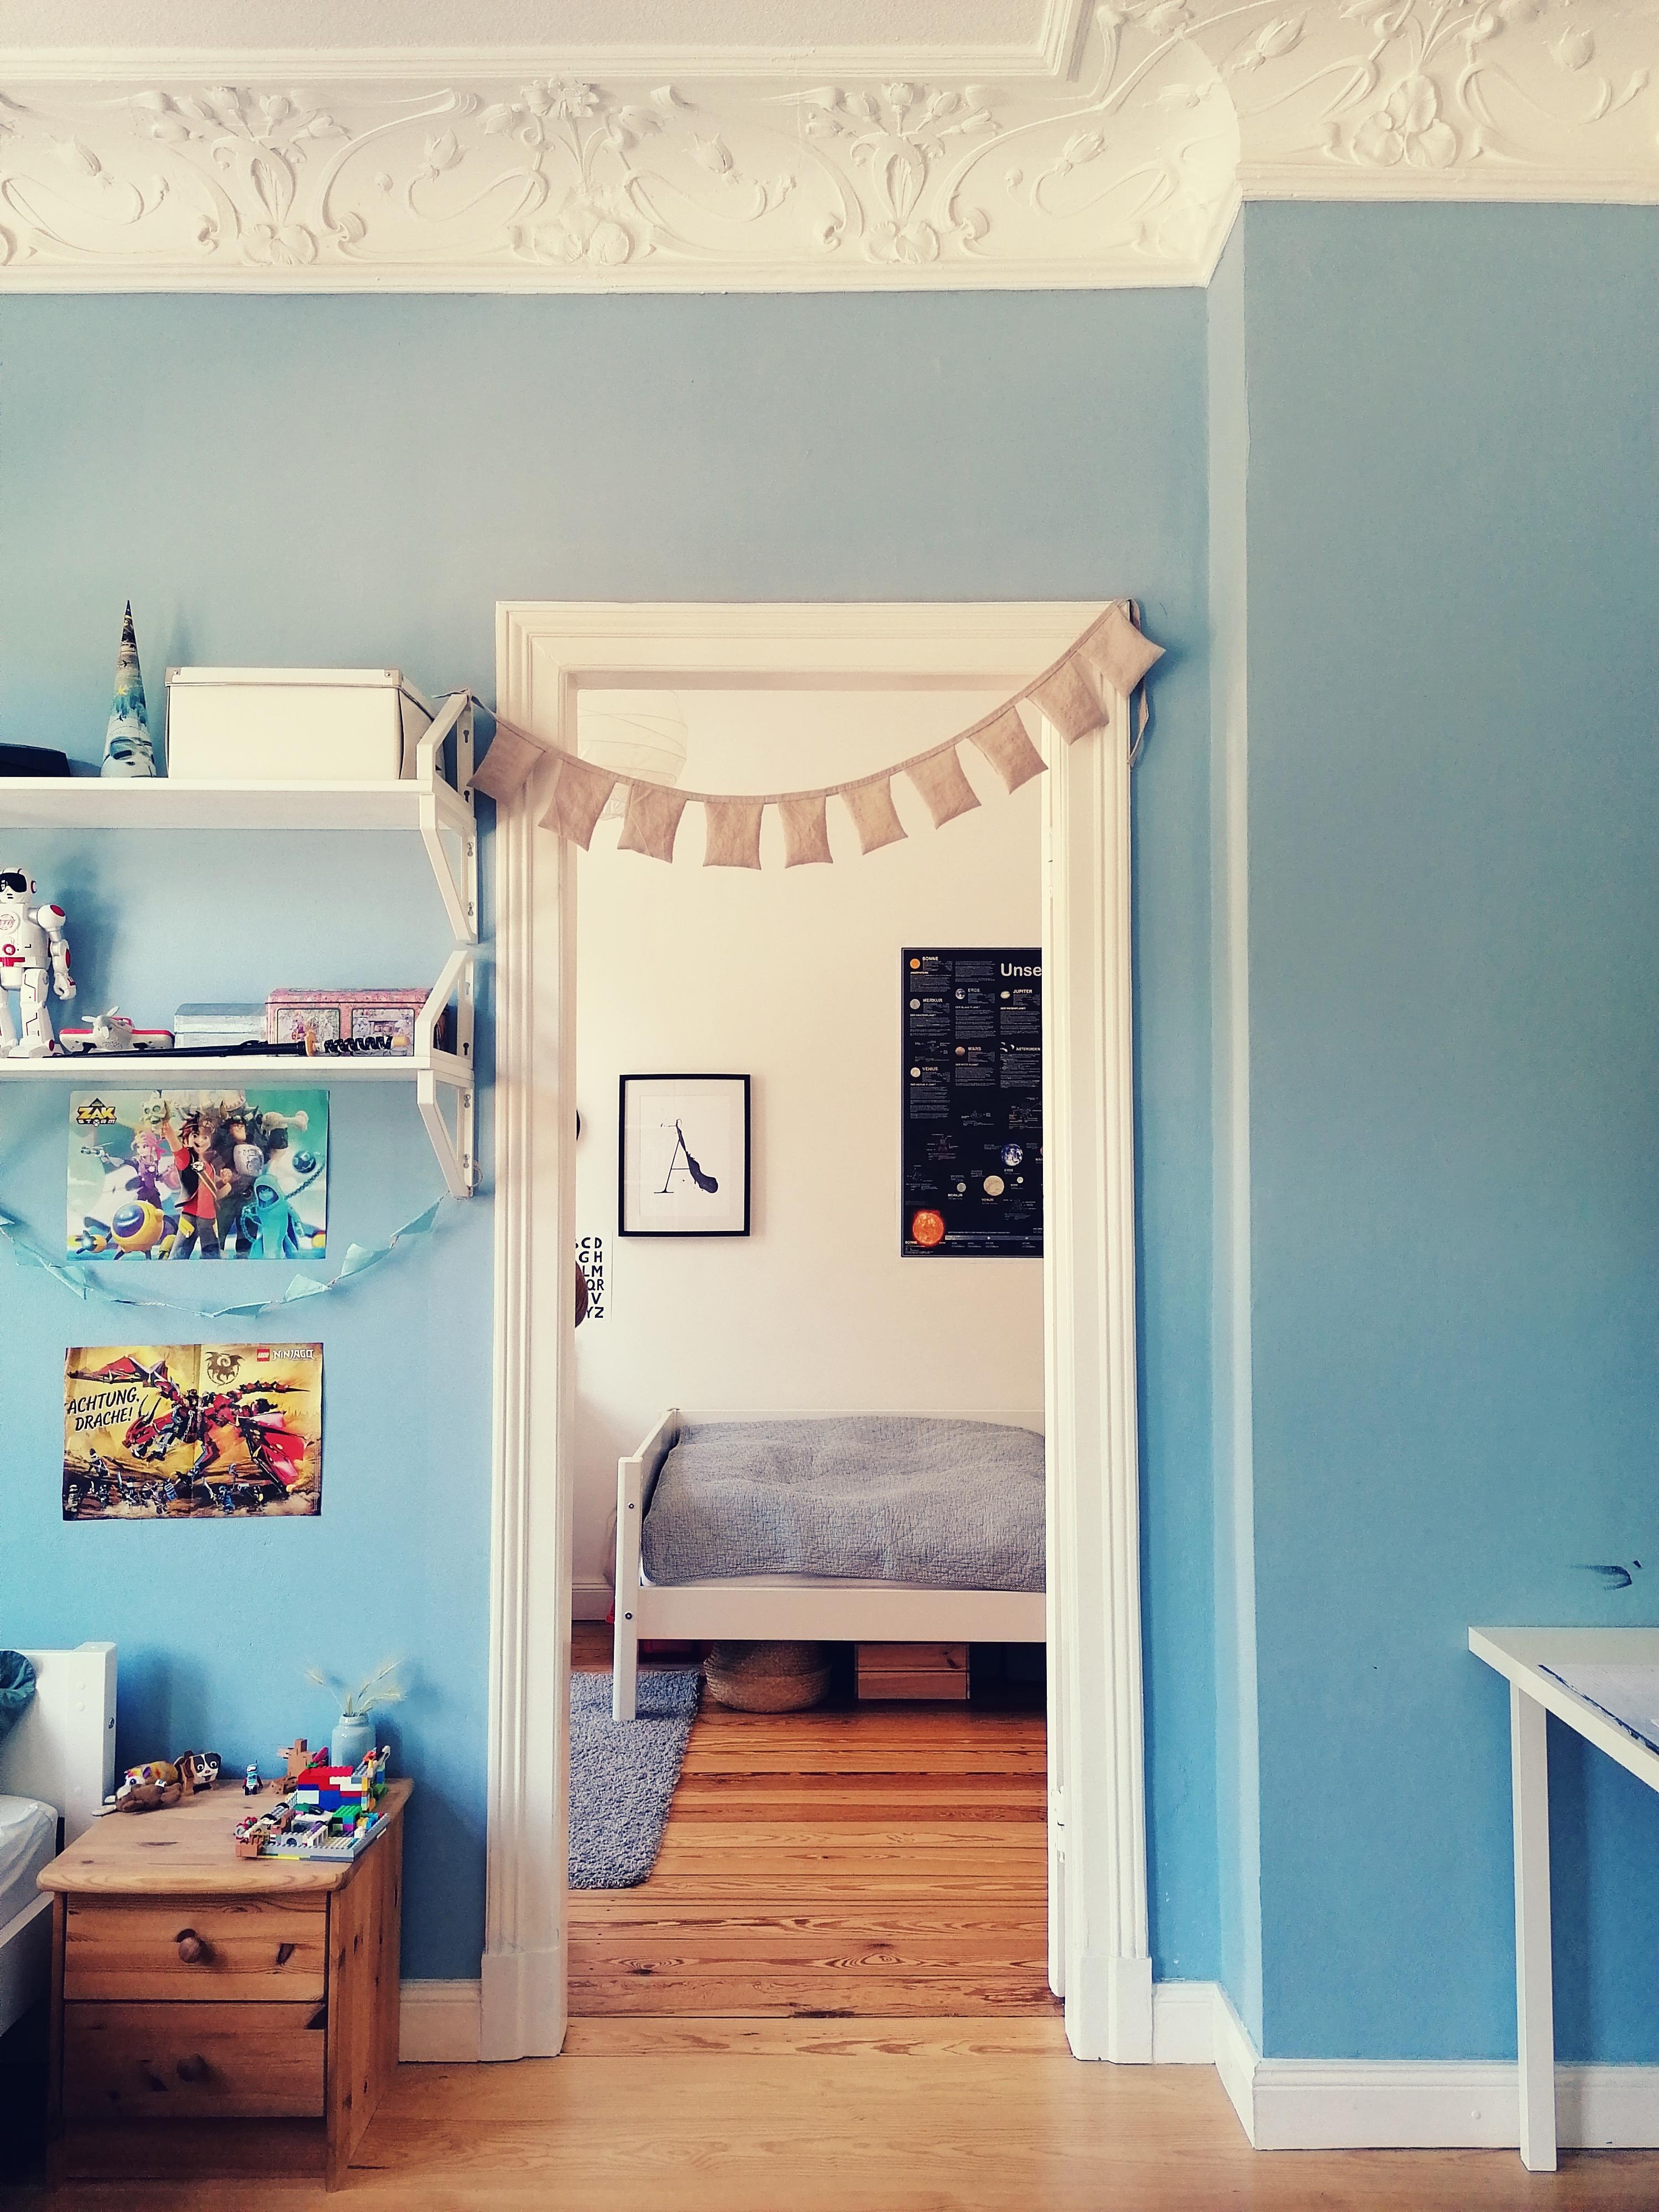 Ein kleines Kinderzimmer, klein aber fein. #kleinerraum #altbauliebe #durchgangszimmer #kinderzimmer 